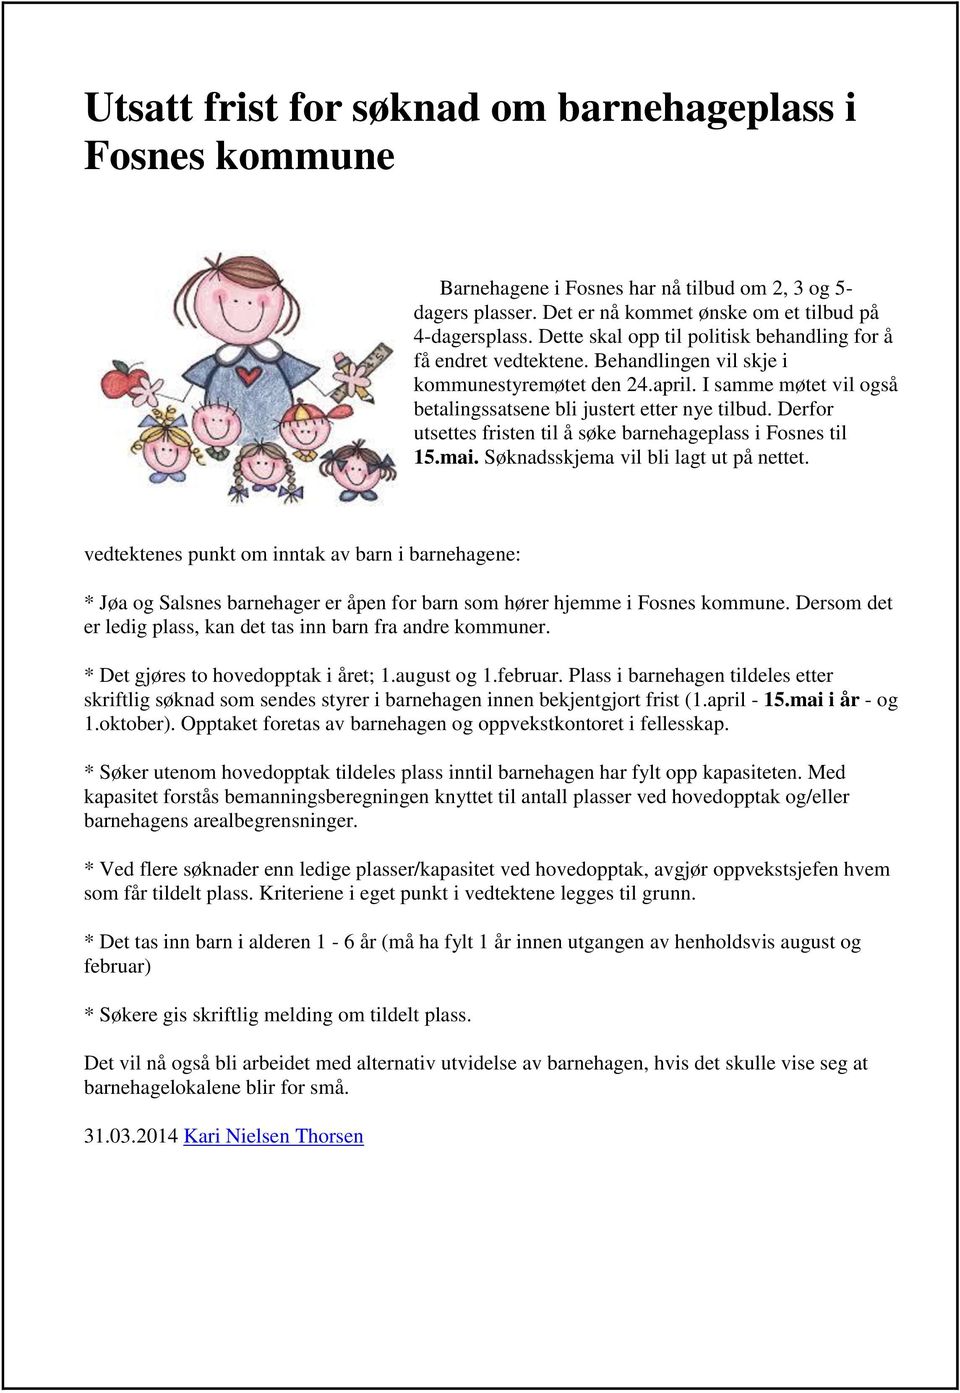 Derfor utsettes fristen til å søke barnehageplass i Fosnes til 15.mai. Søknadsskjema vil bli lagt ut på nettet.